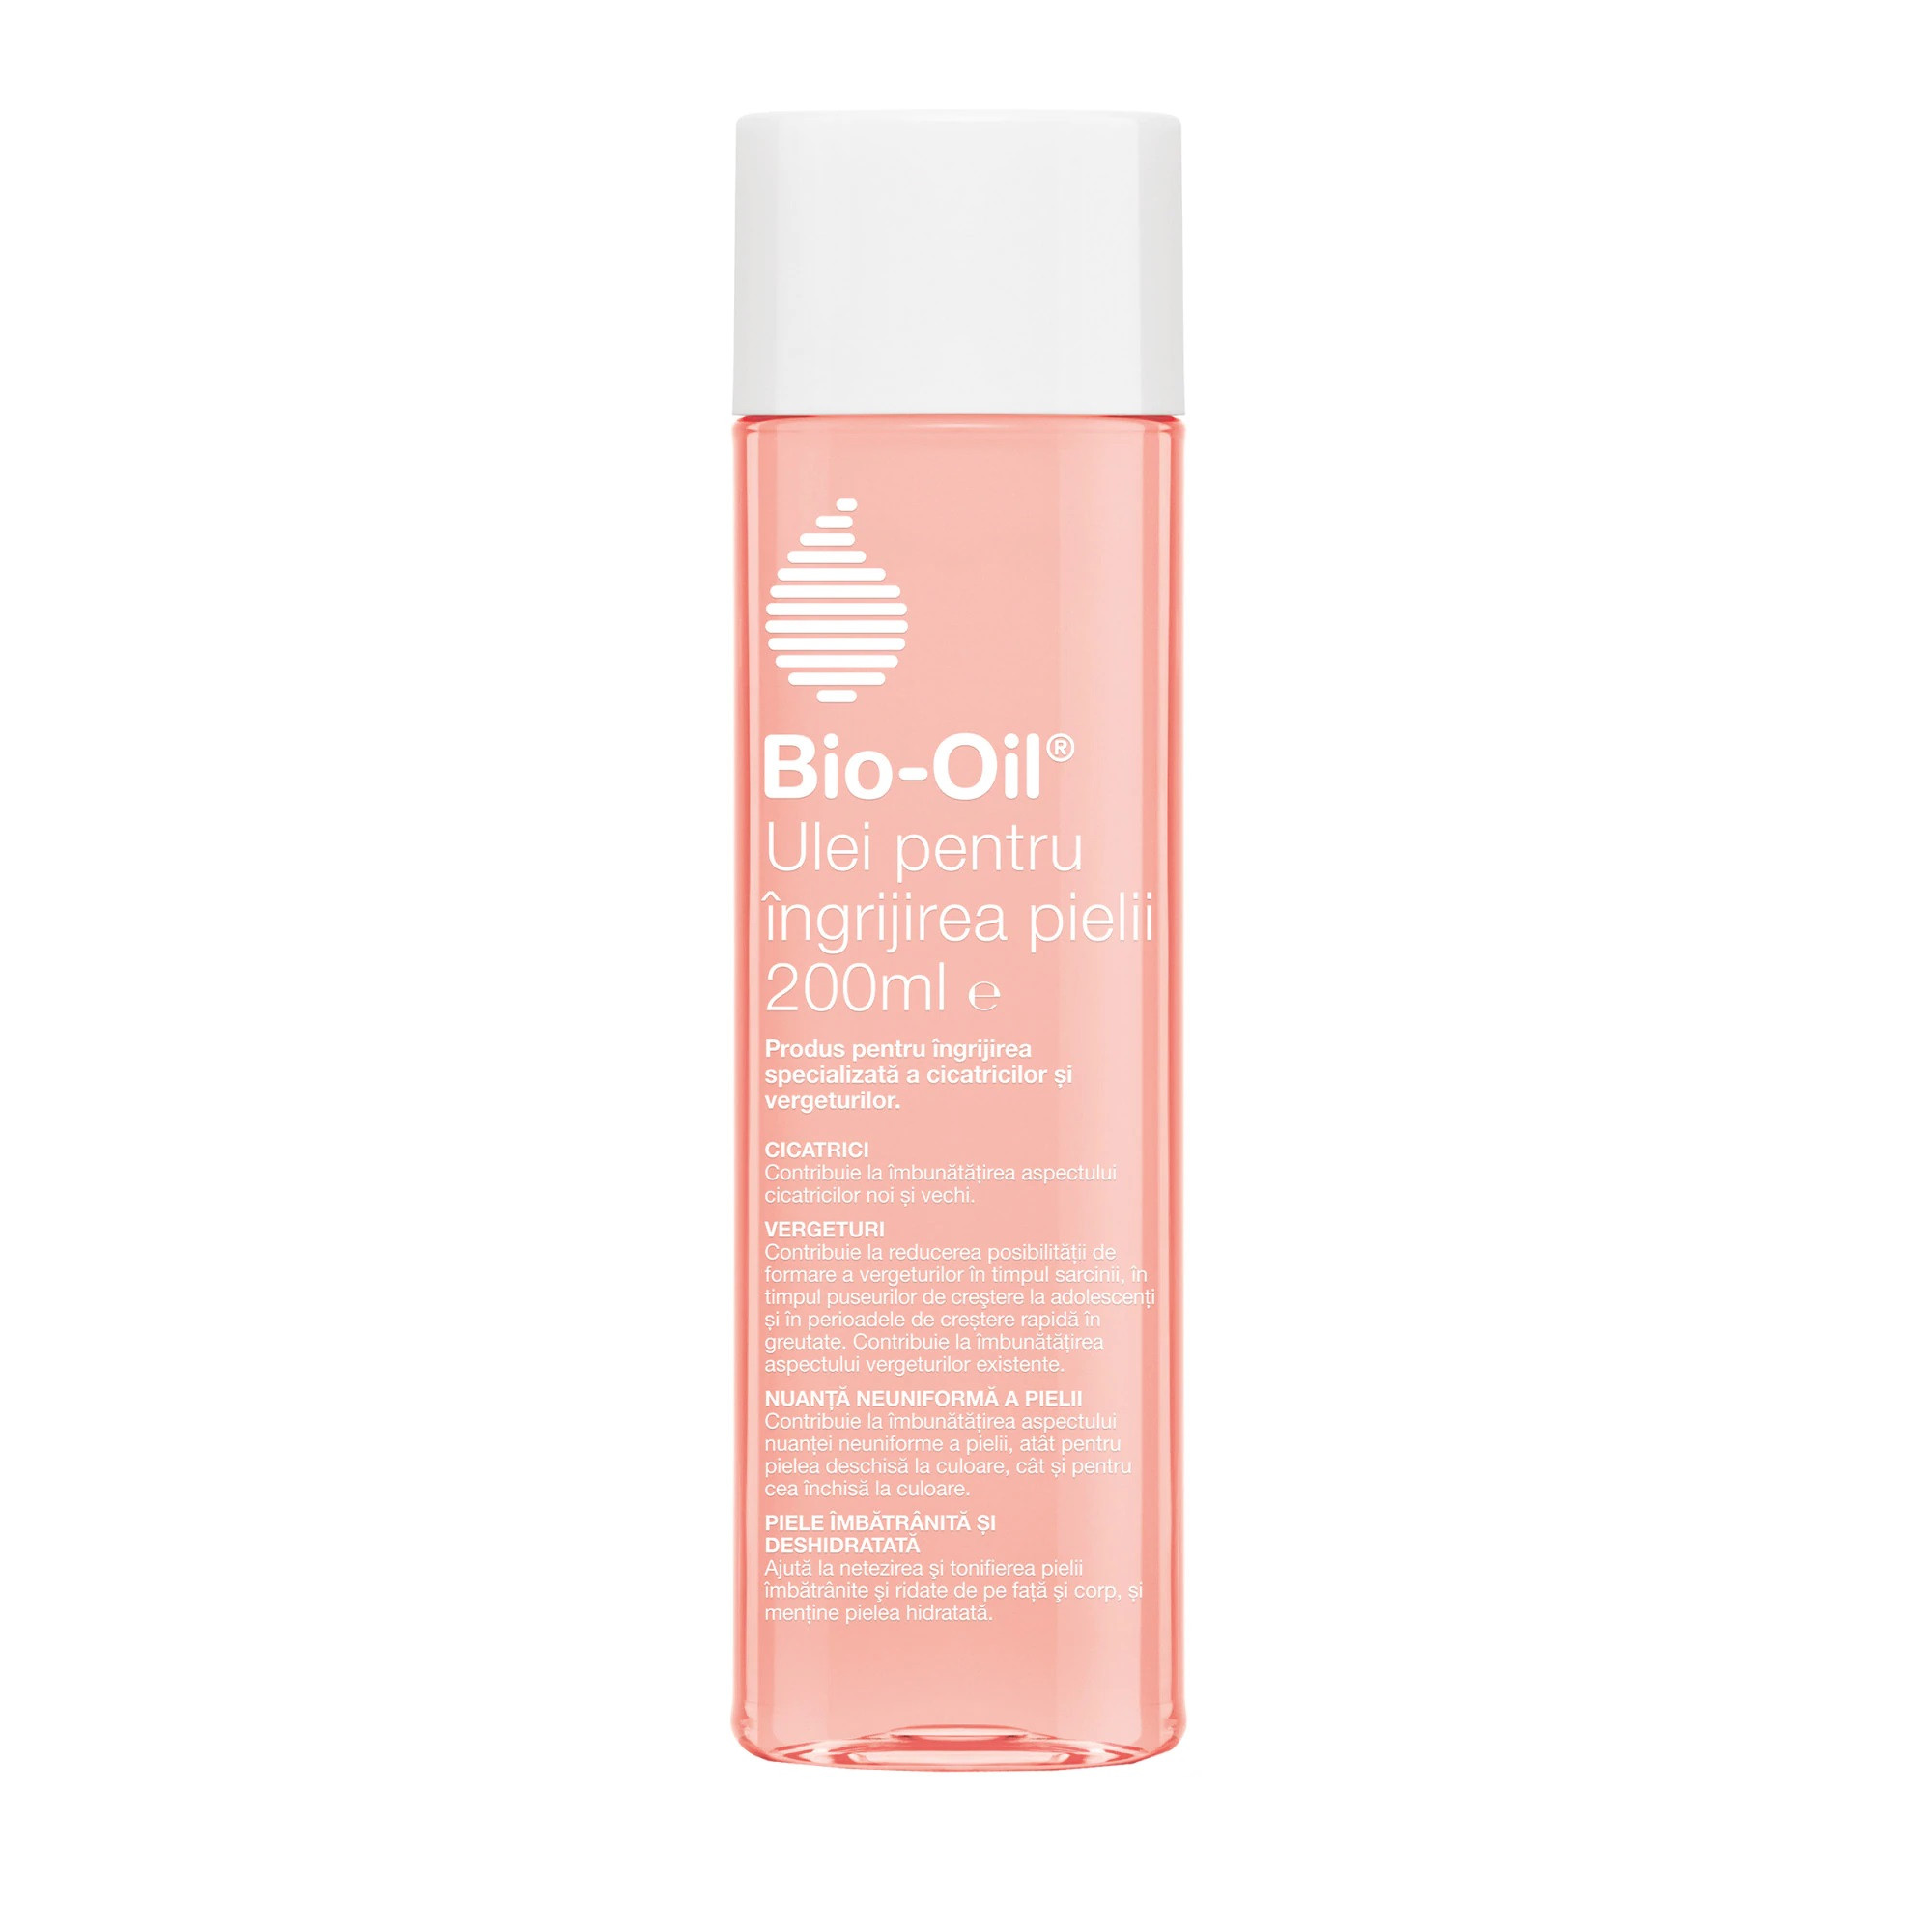 Bio Oil ulei pentru piele elastica fara vergeturi, 200ml